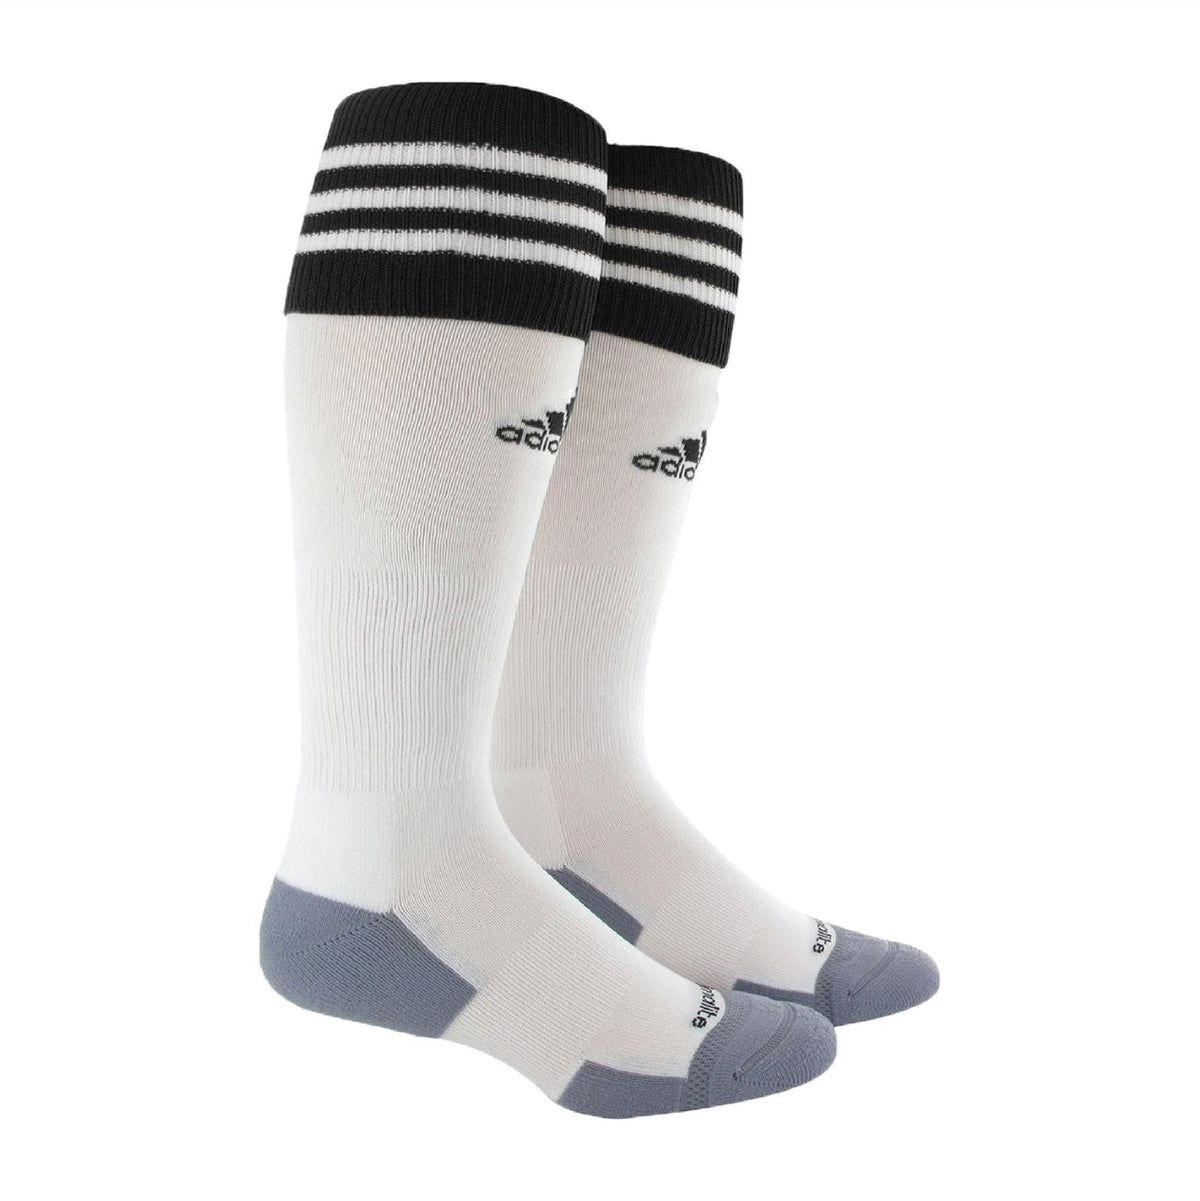 adidas Copa Zone Cushion 2.0 Socks (White/Black) Soccer Socks adidas X-Small White/Black 